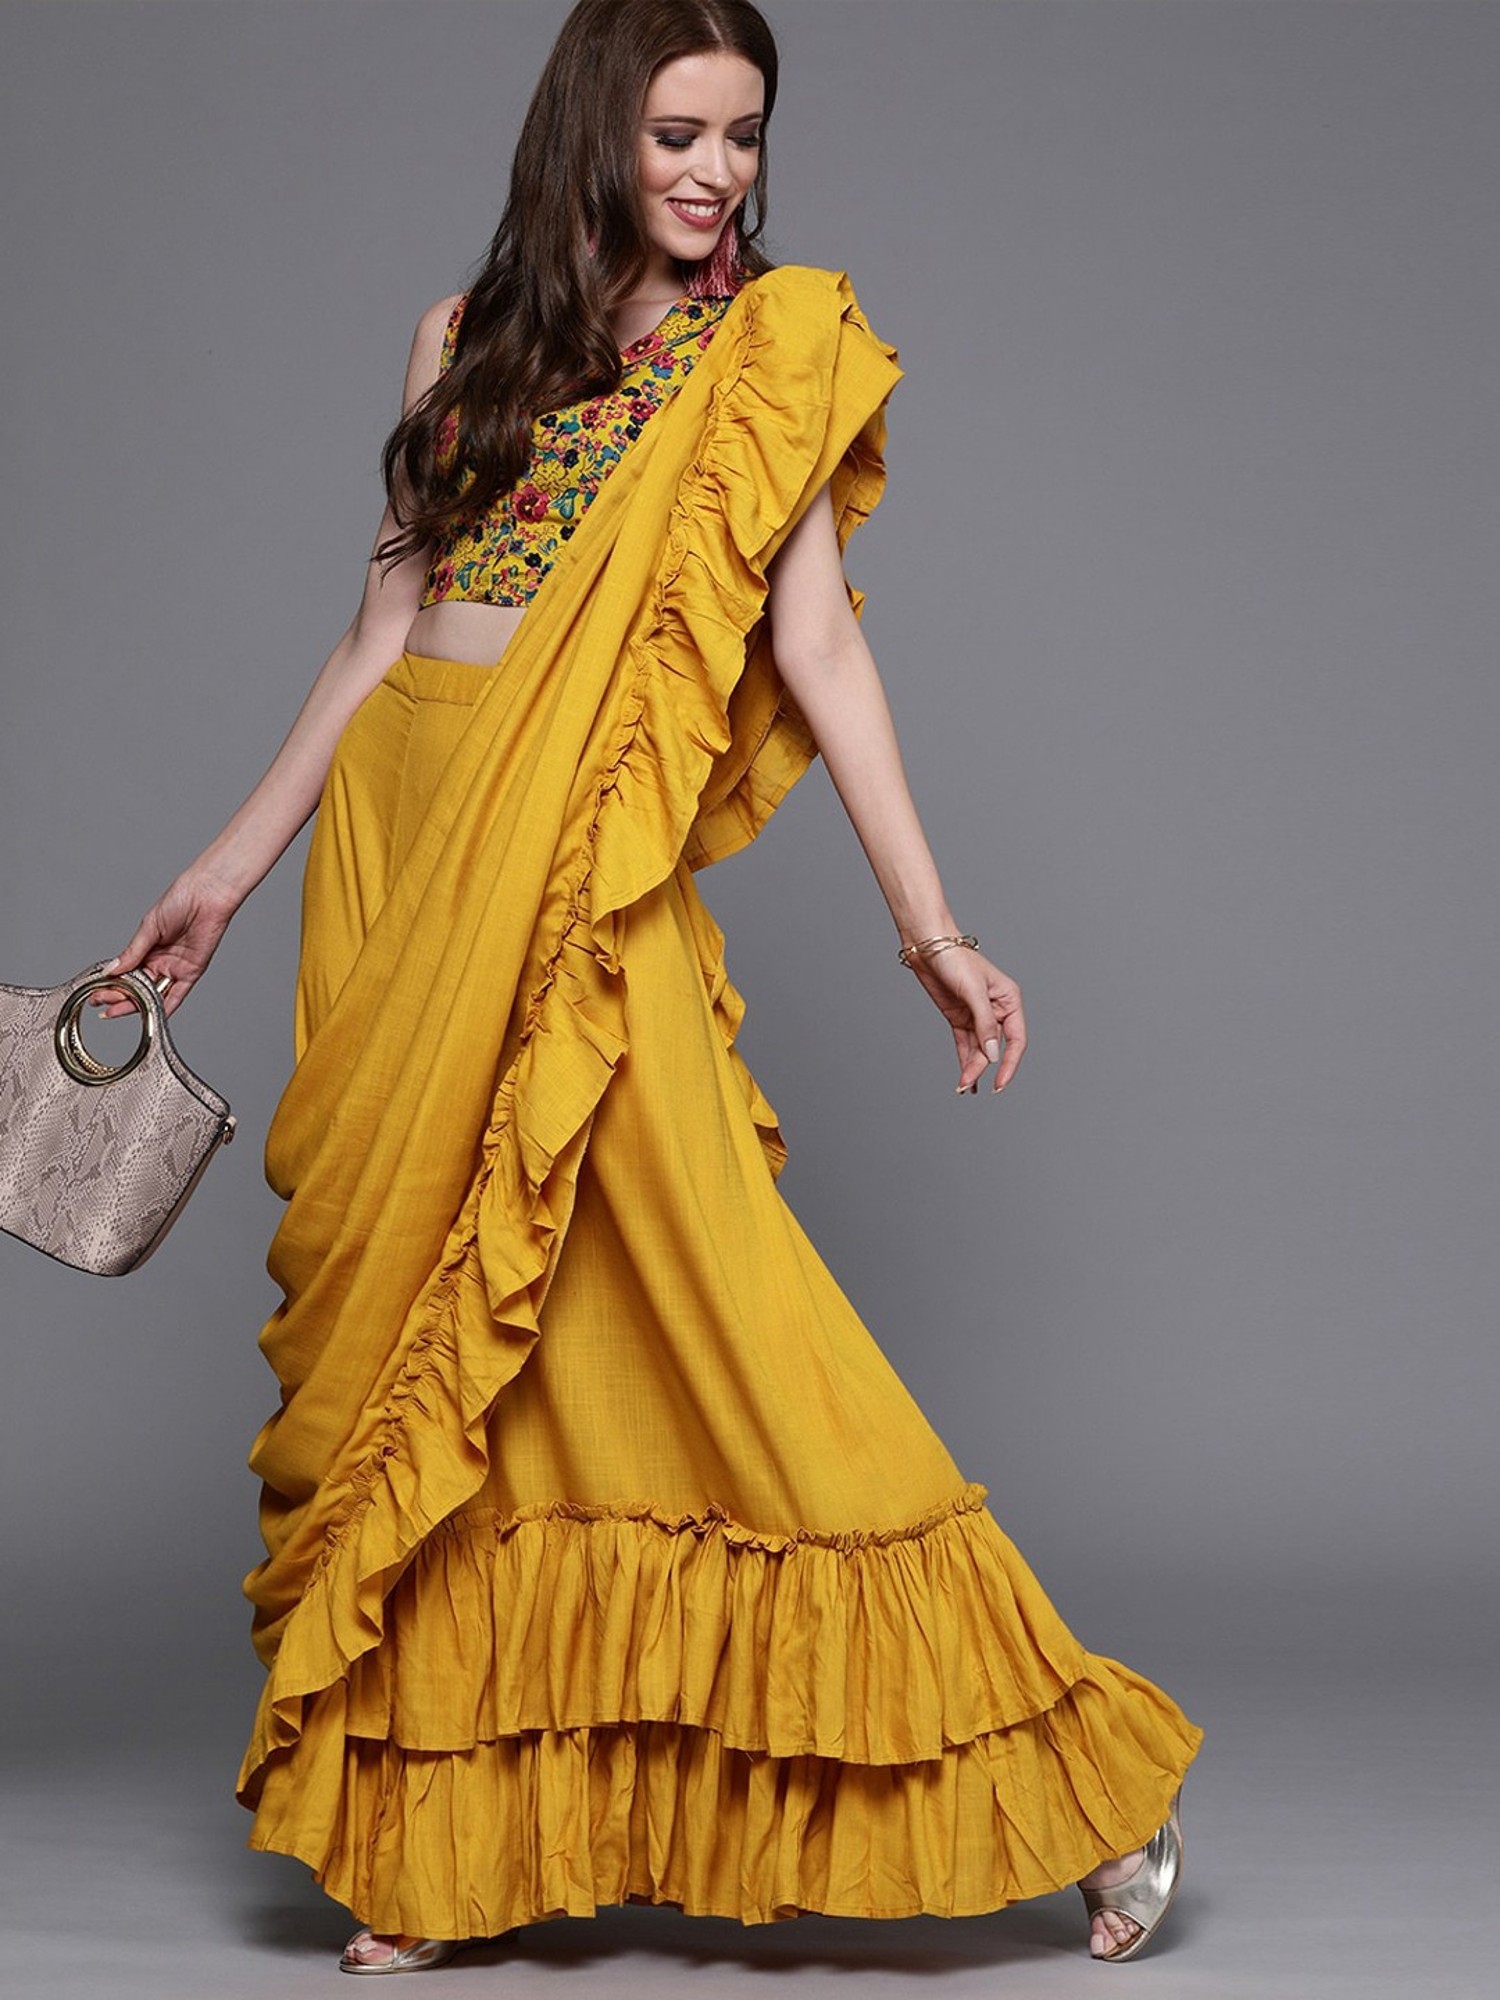 Ready Made Sari / Pre Stitched sari / easy to wear sari - YouTube